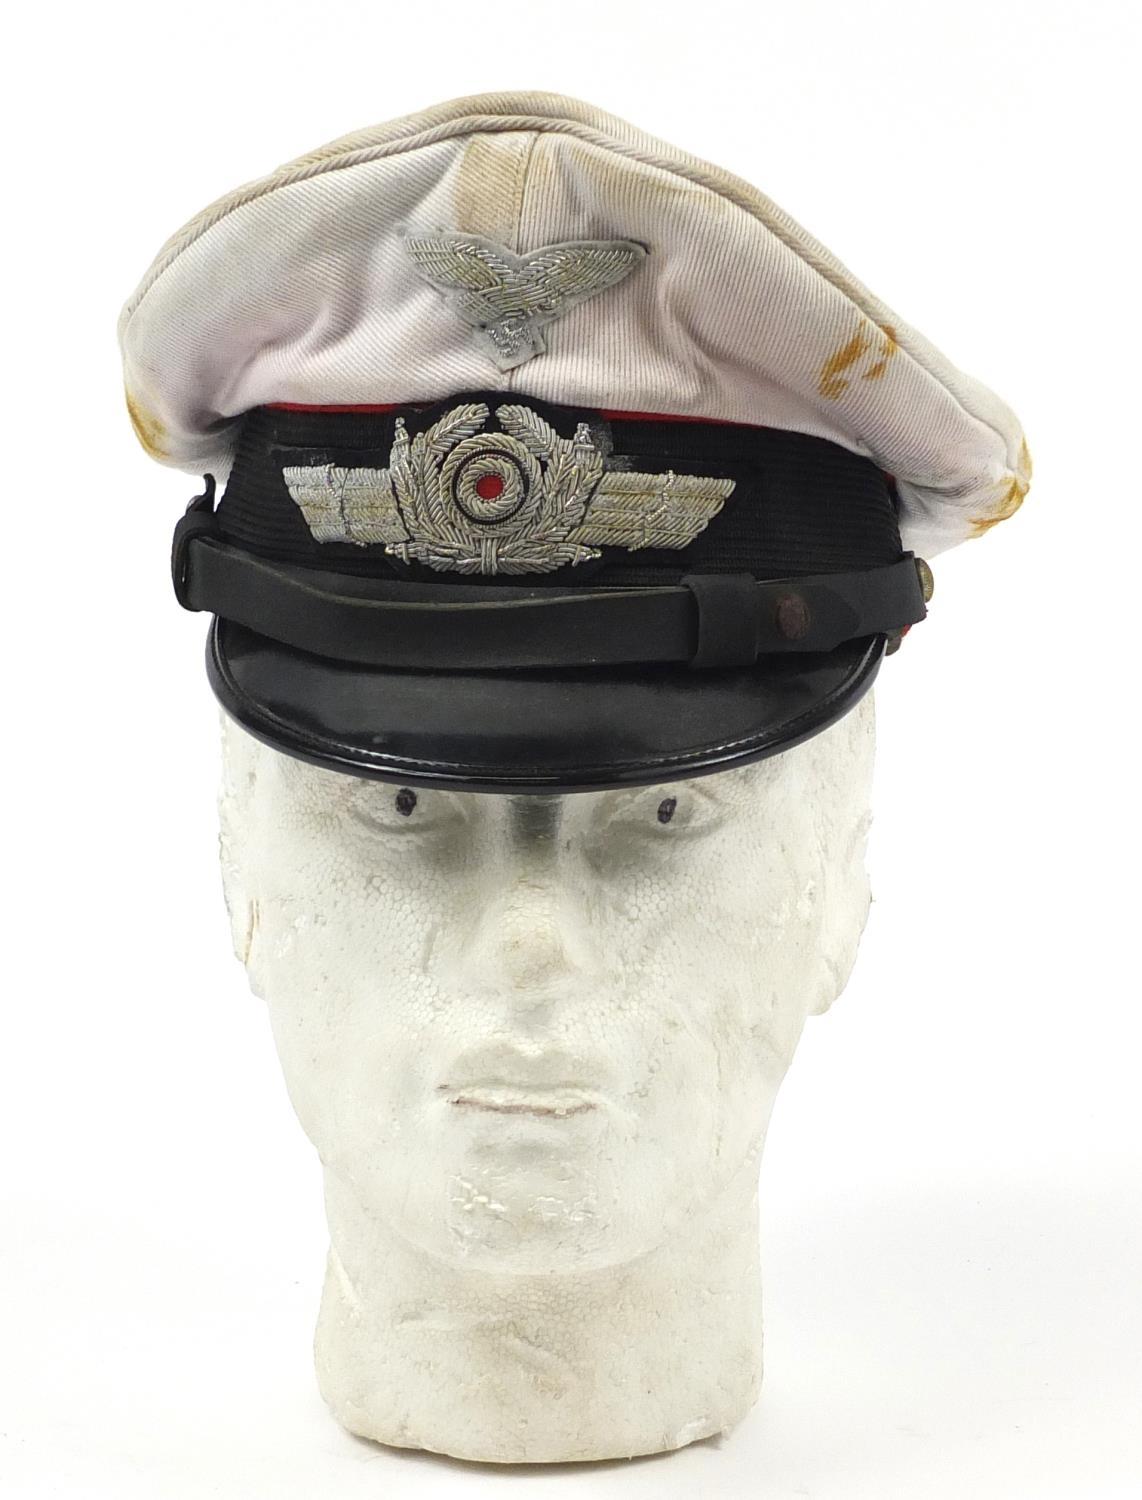 German military interest Luftwaffe visor cap with badges - Image 2 of 9